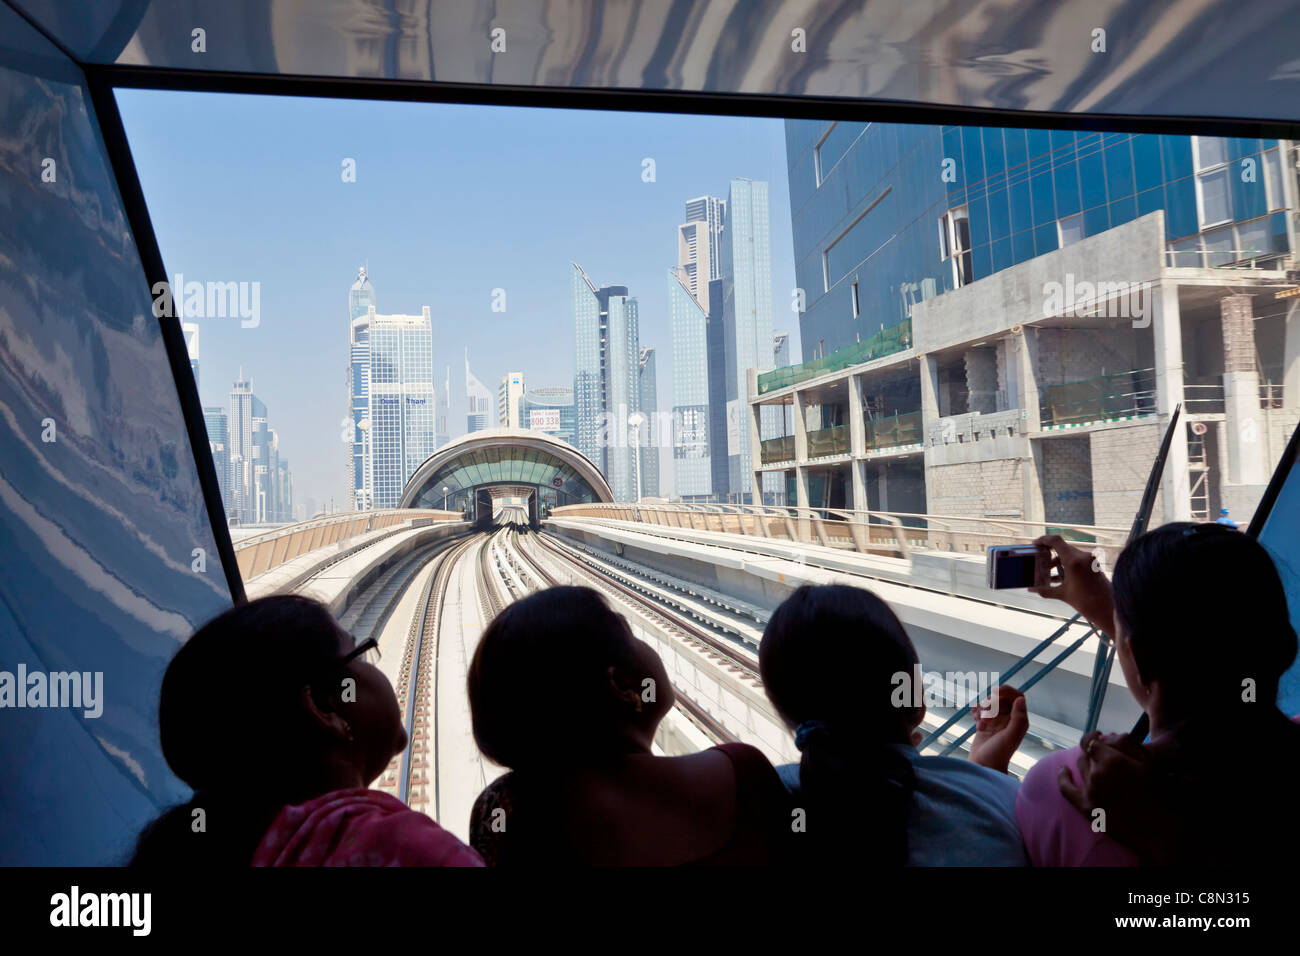 Sheikh Zayed Road Skyline Wolkenkratzer Wolkenkratzer, u-Bahn Zug innen Tourist Passagiere, Dubai City, Vereinigte Arabische Emirate, Vereinigte Arabische Emirate Stockfoto